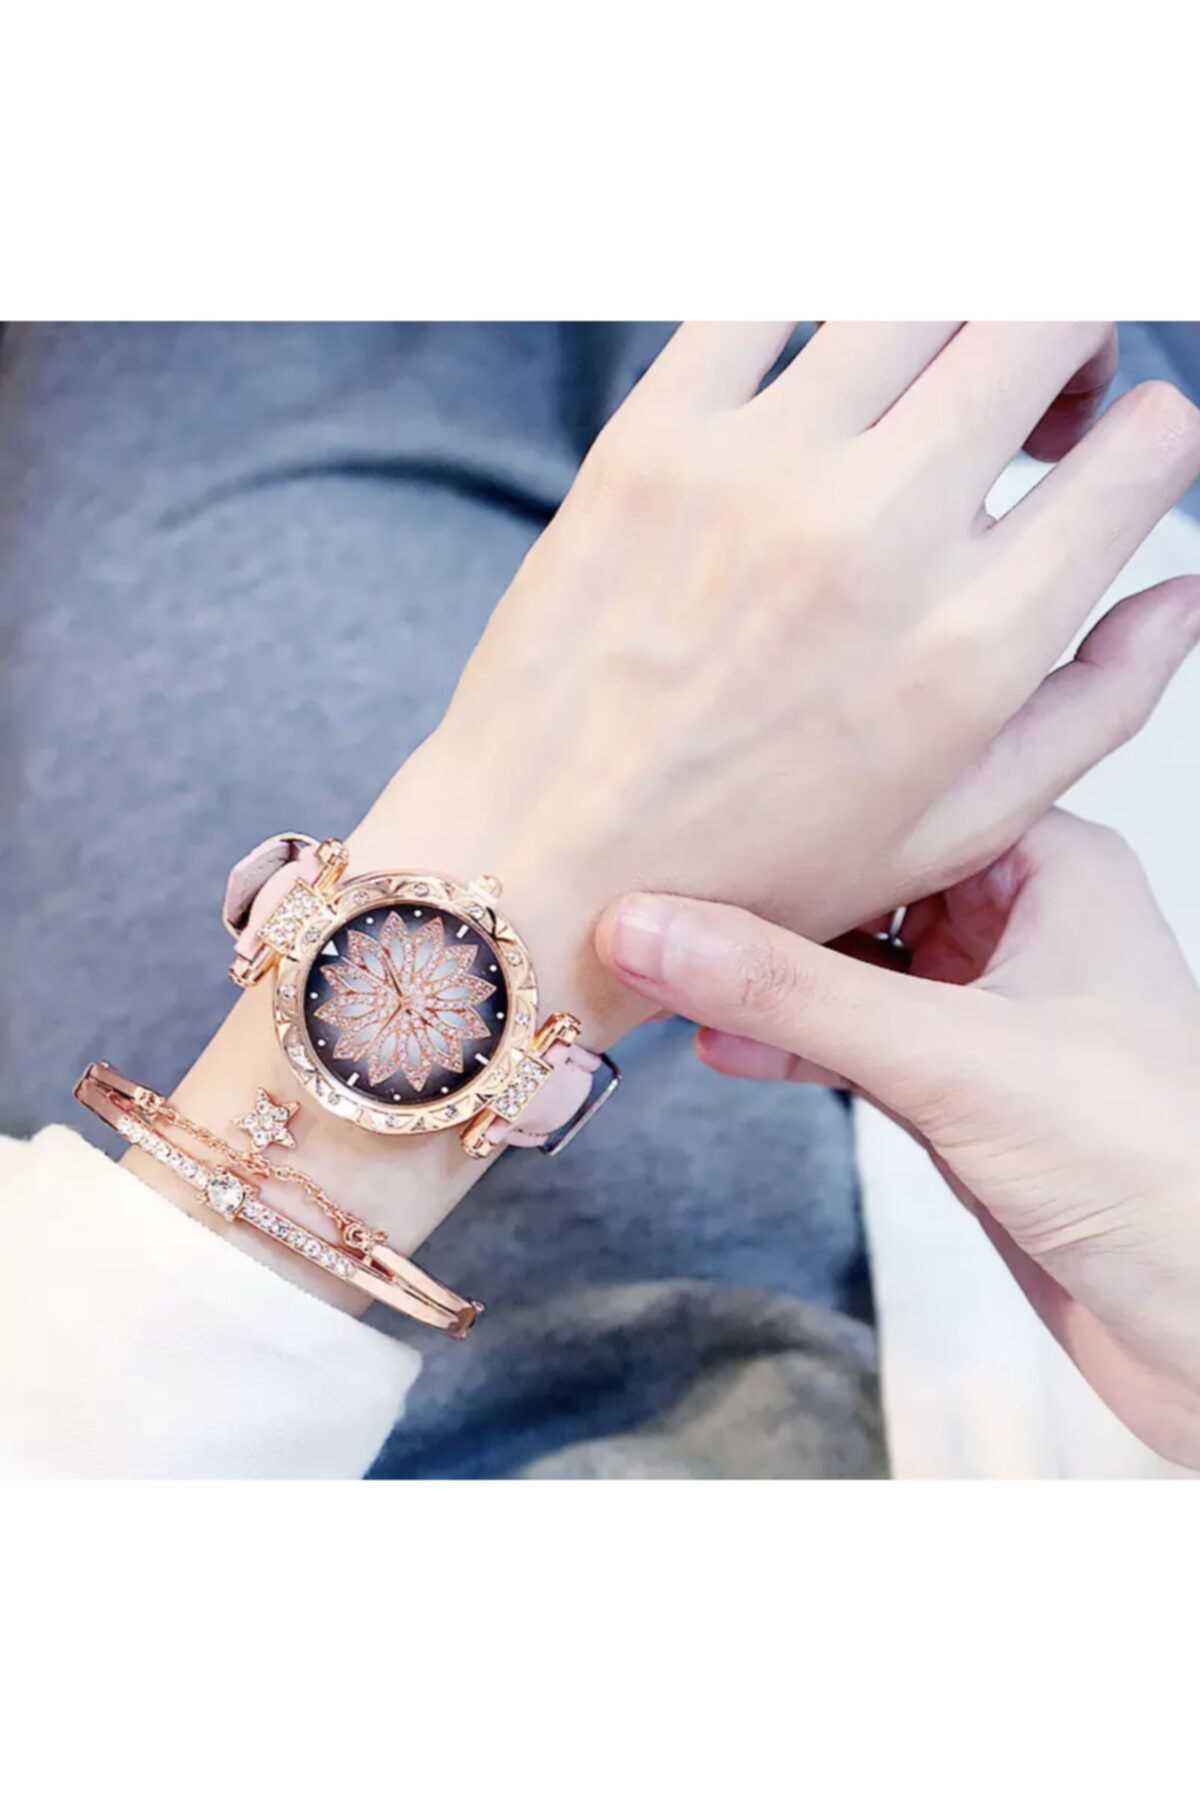 خرید ساعت مچی زنانه  اصل برند FieroZelante رنگ صورتی ty97496371